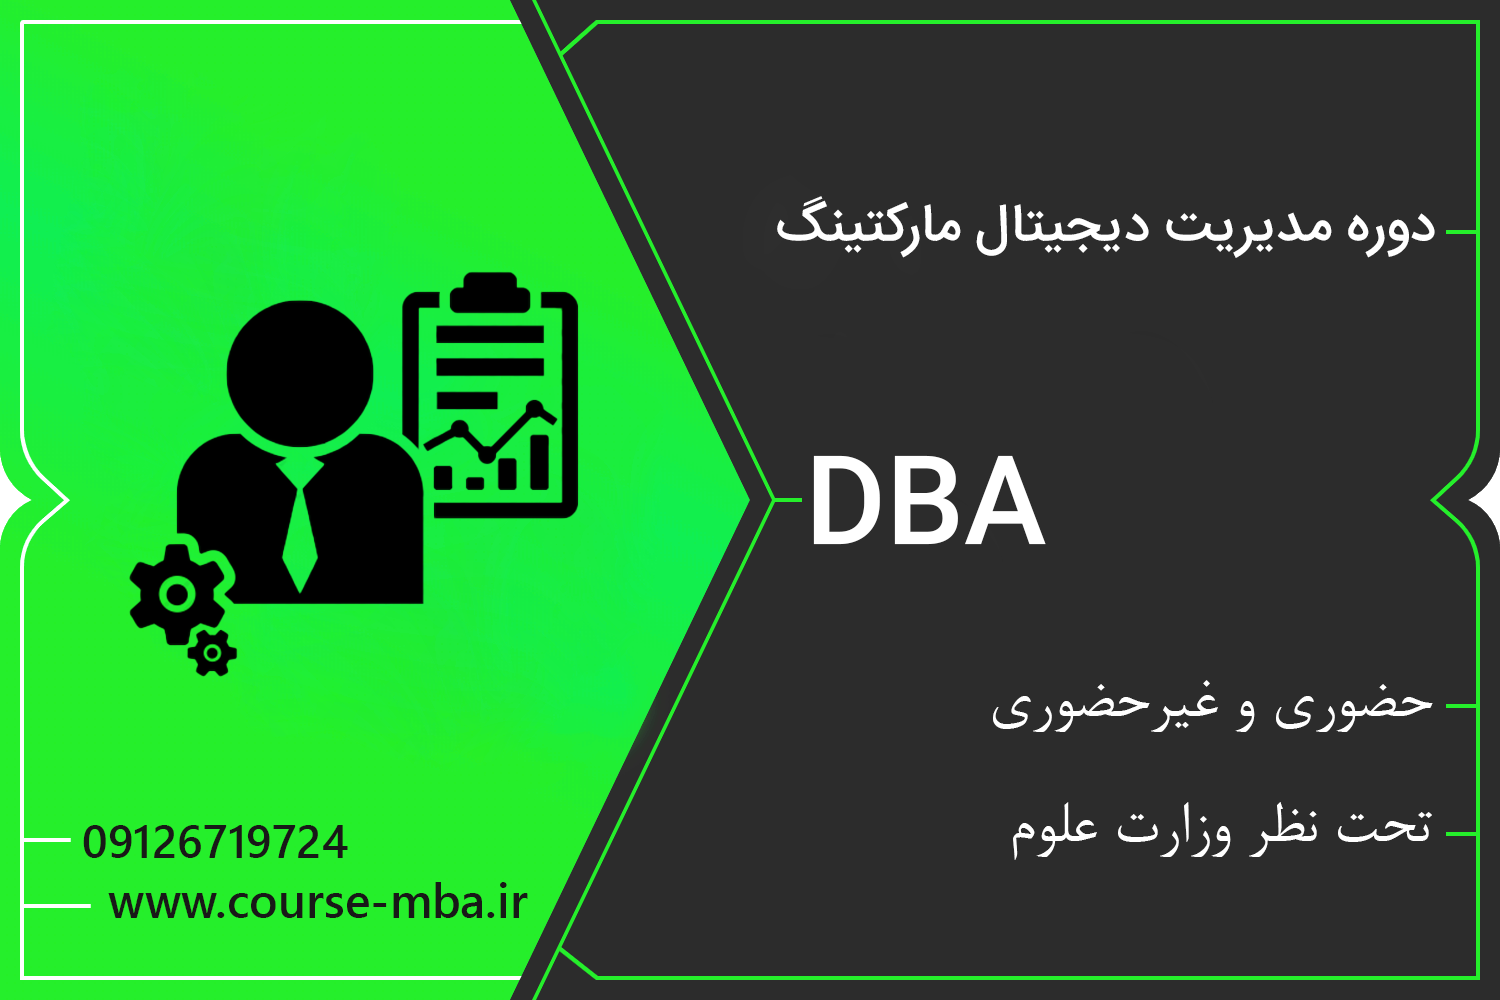 دوره DBA مدیریت دیجیتال مارکتینگ | مدرک DBA مدیریت دیجیتال مارکتینگ